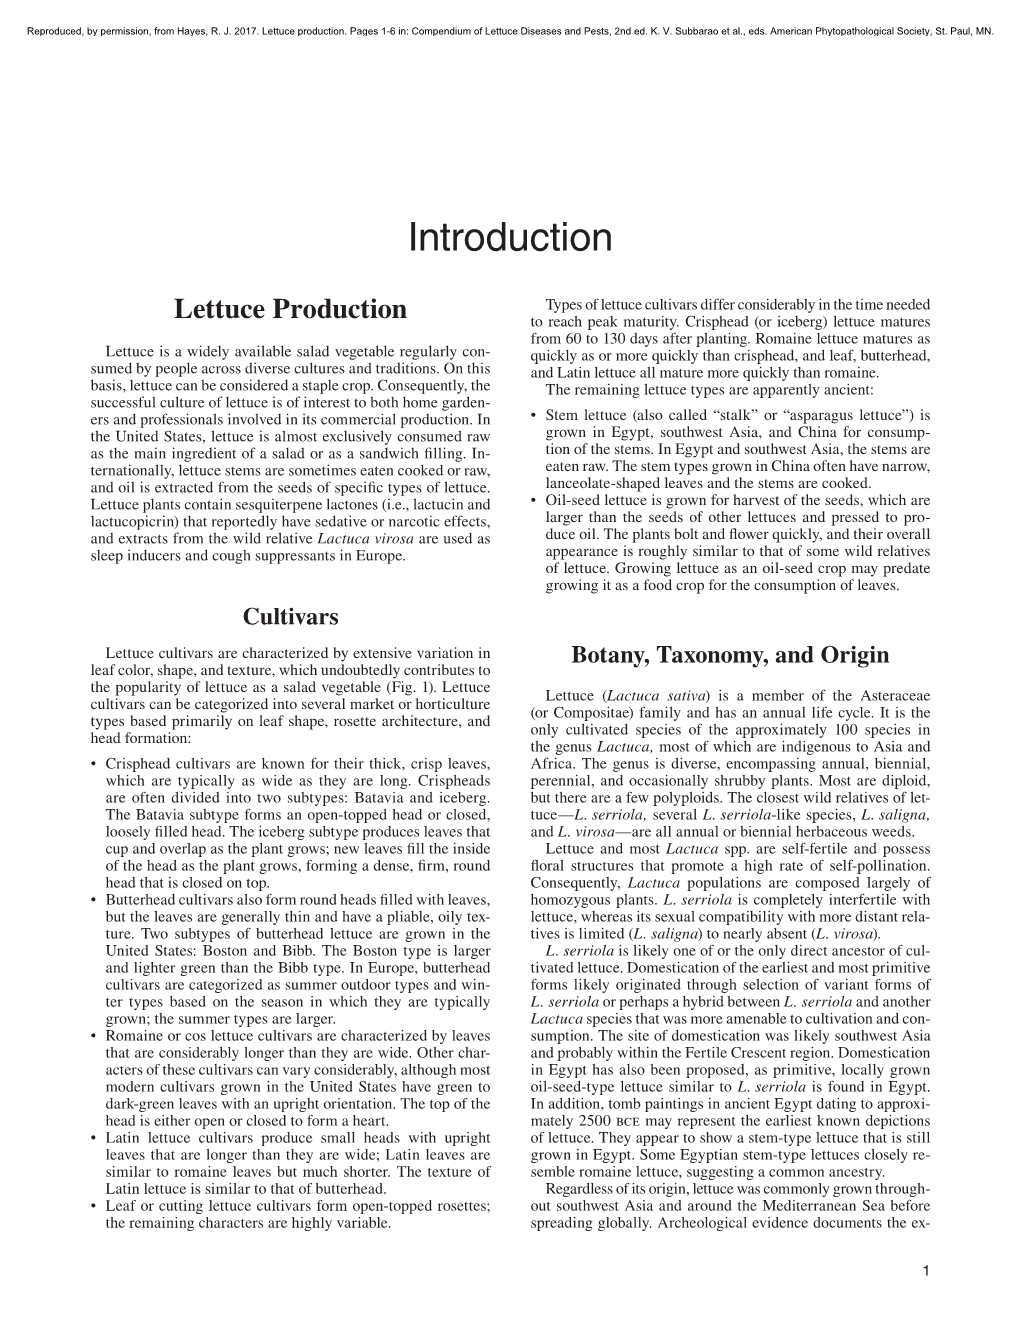 Lettuce Compendium Introduction